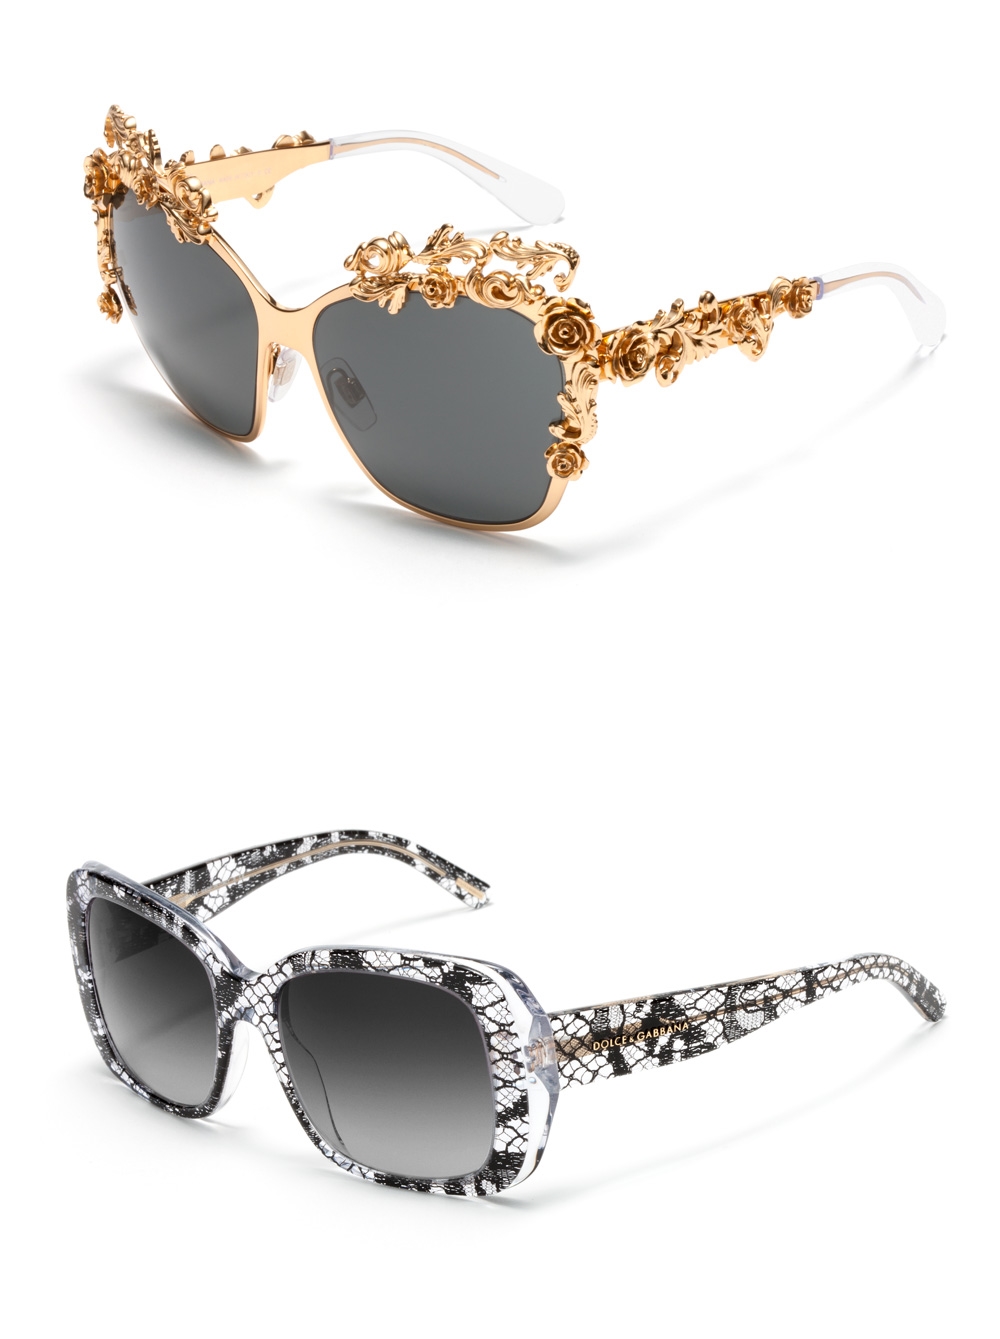 Модные солнцезащитные очки Dolce&Gabbana 2014, для женщин